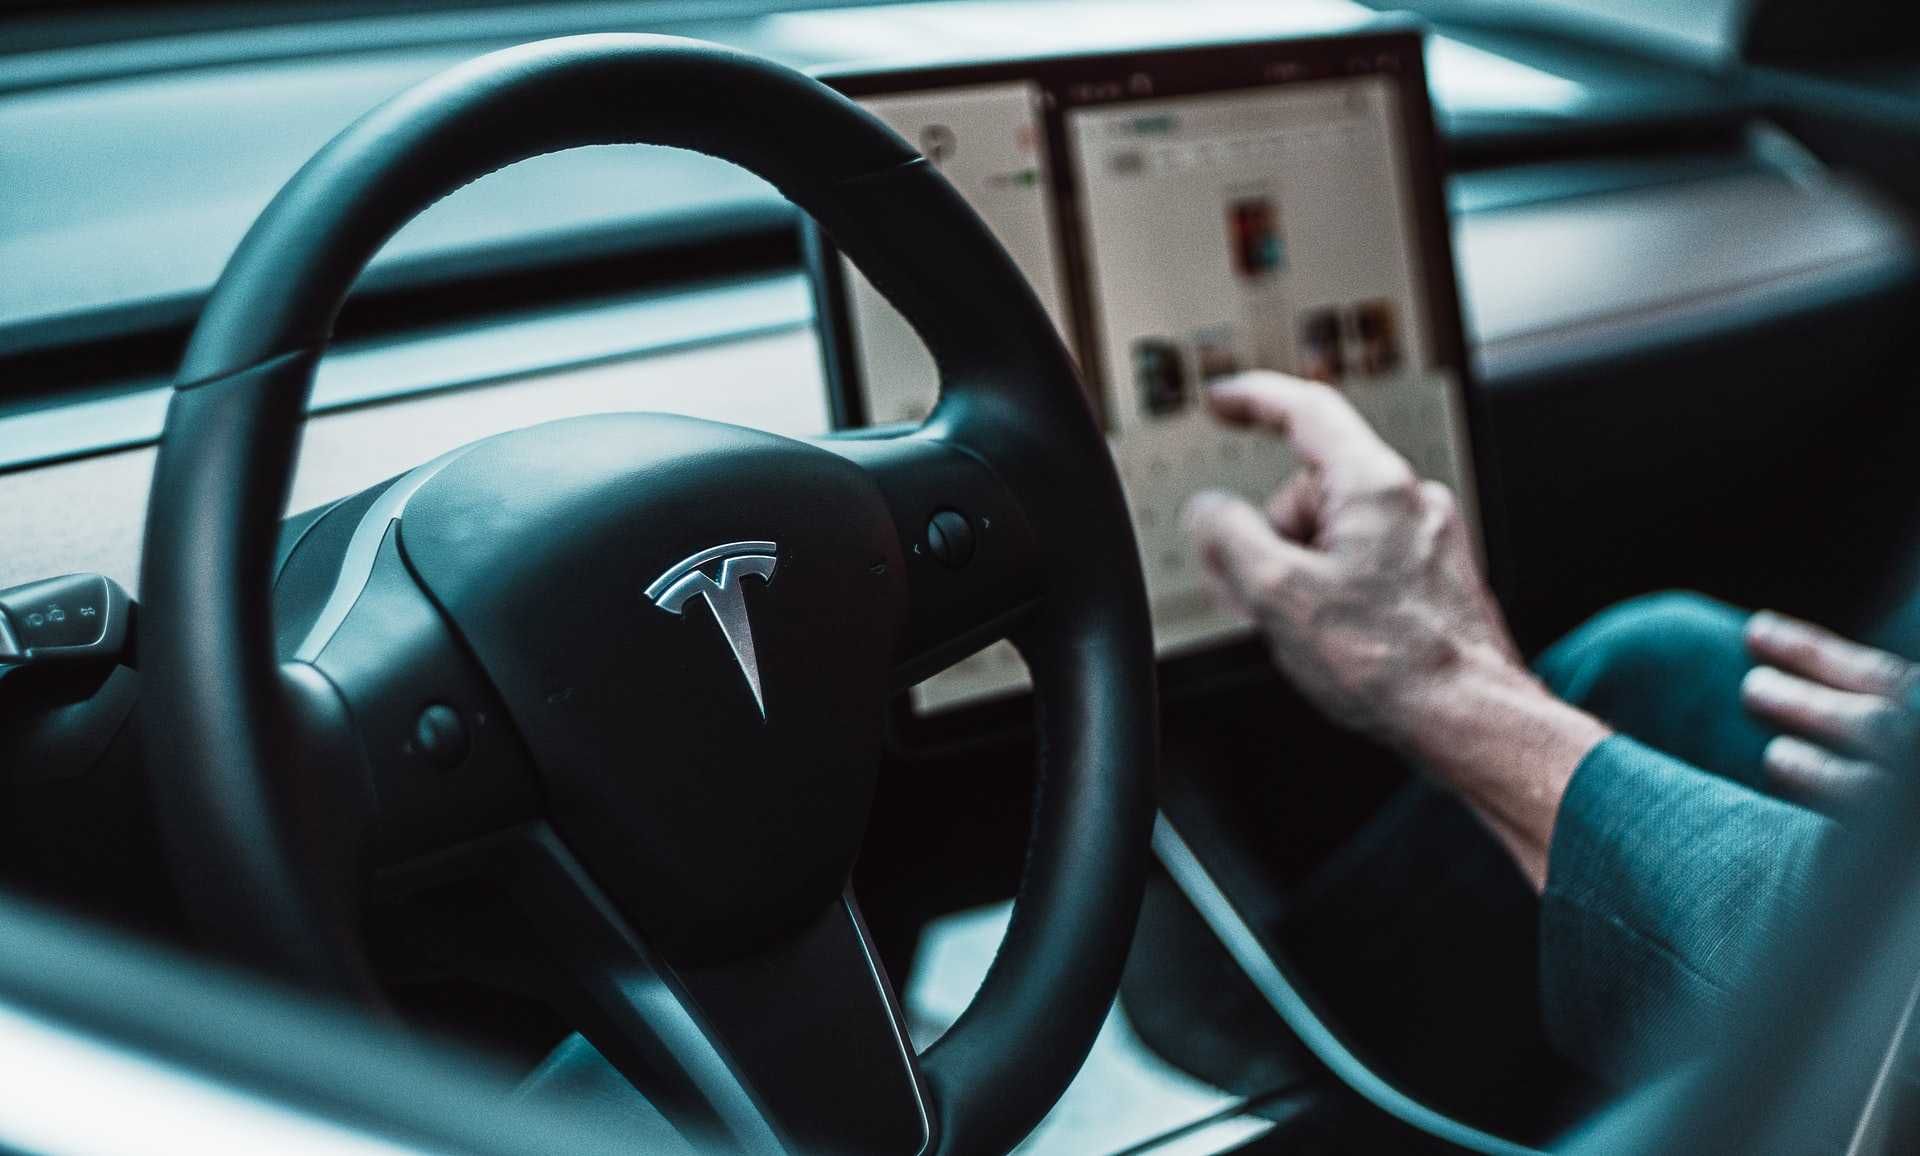 Автомобили Tesla научились передавать видео со встроенных камер на смартфон владельца